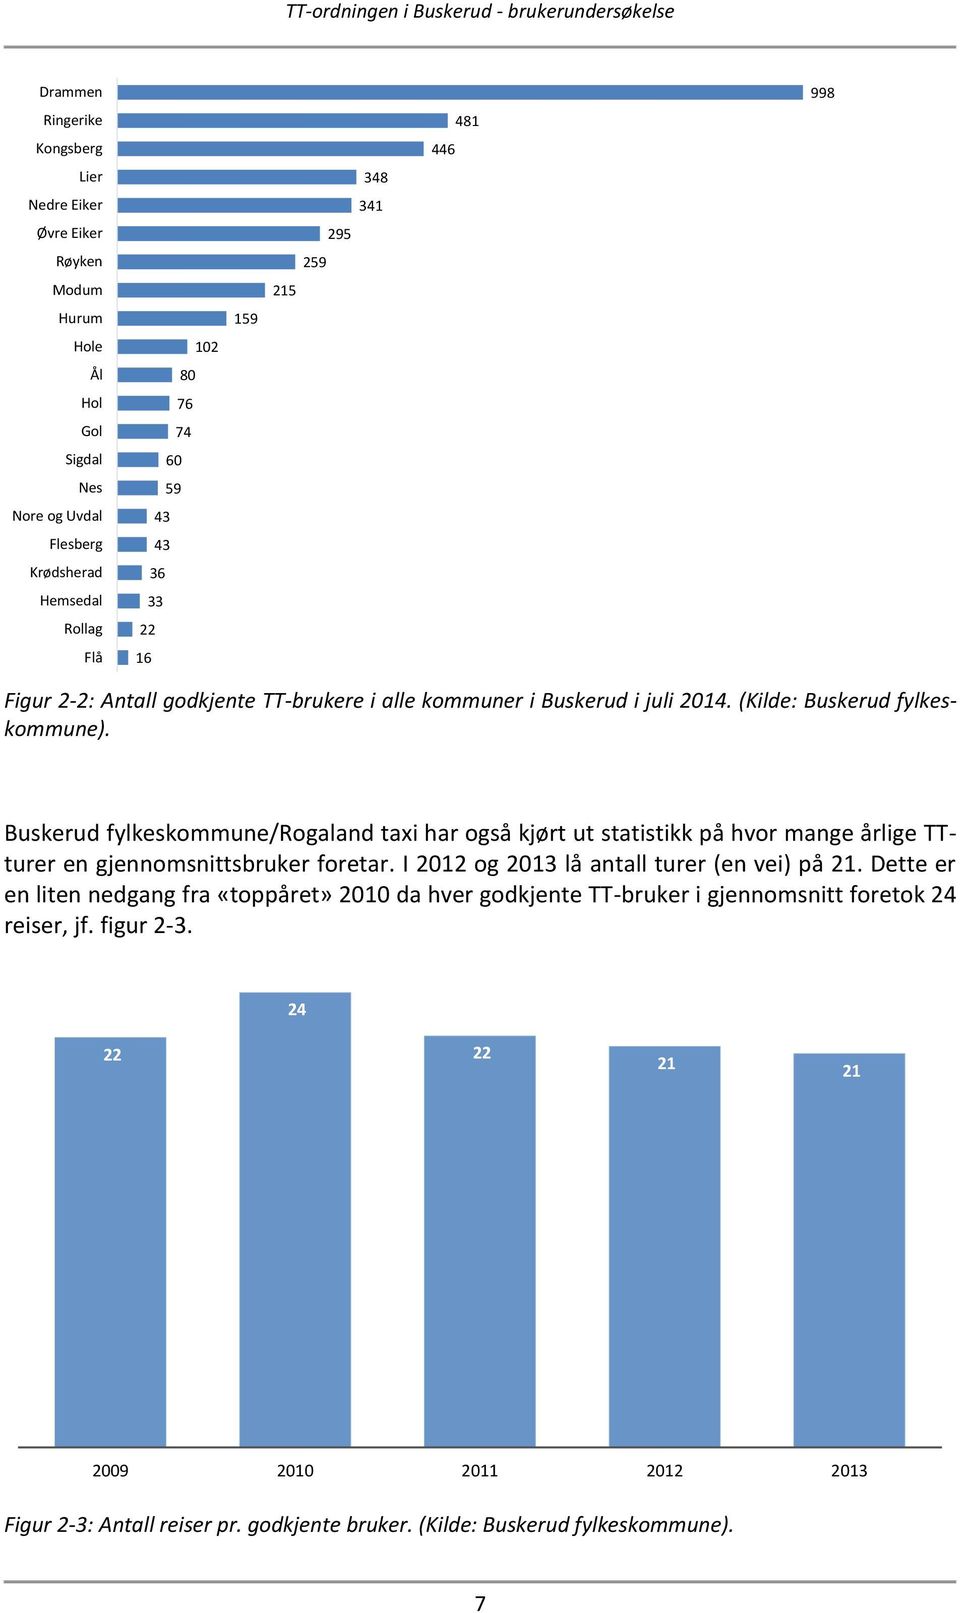 Buskerud fylkeskommune/rogaland taxi har også kjørt ut statistikk på hvor mange årlige TTturer en gjennomsnittsbruker foretar. I 2012 og 2013 lå antall turer (en vei) på 21.